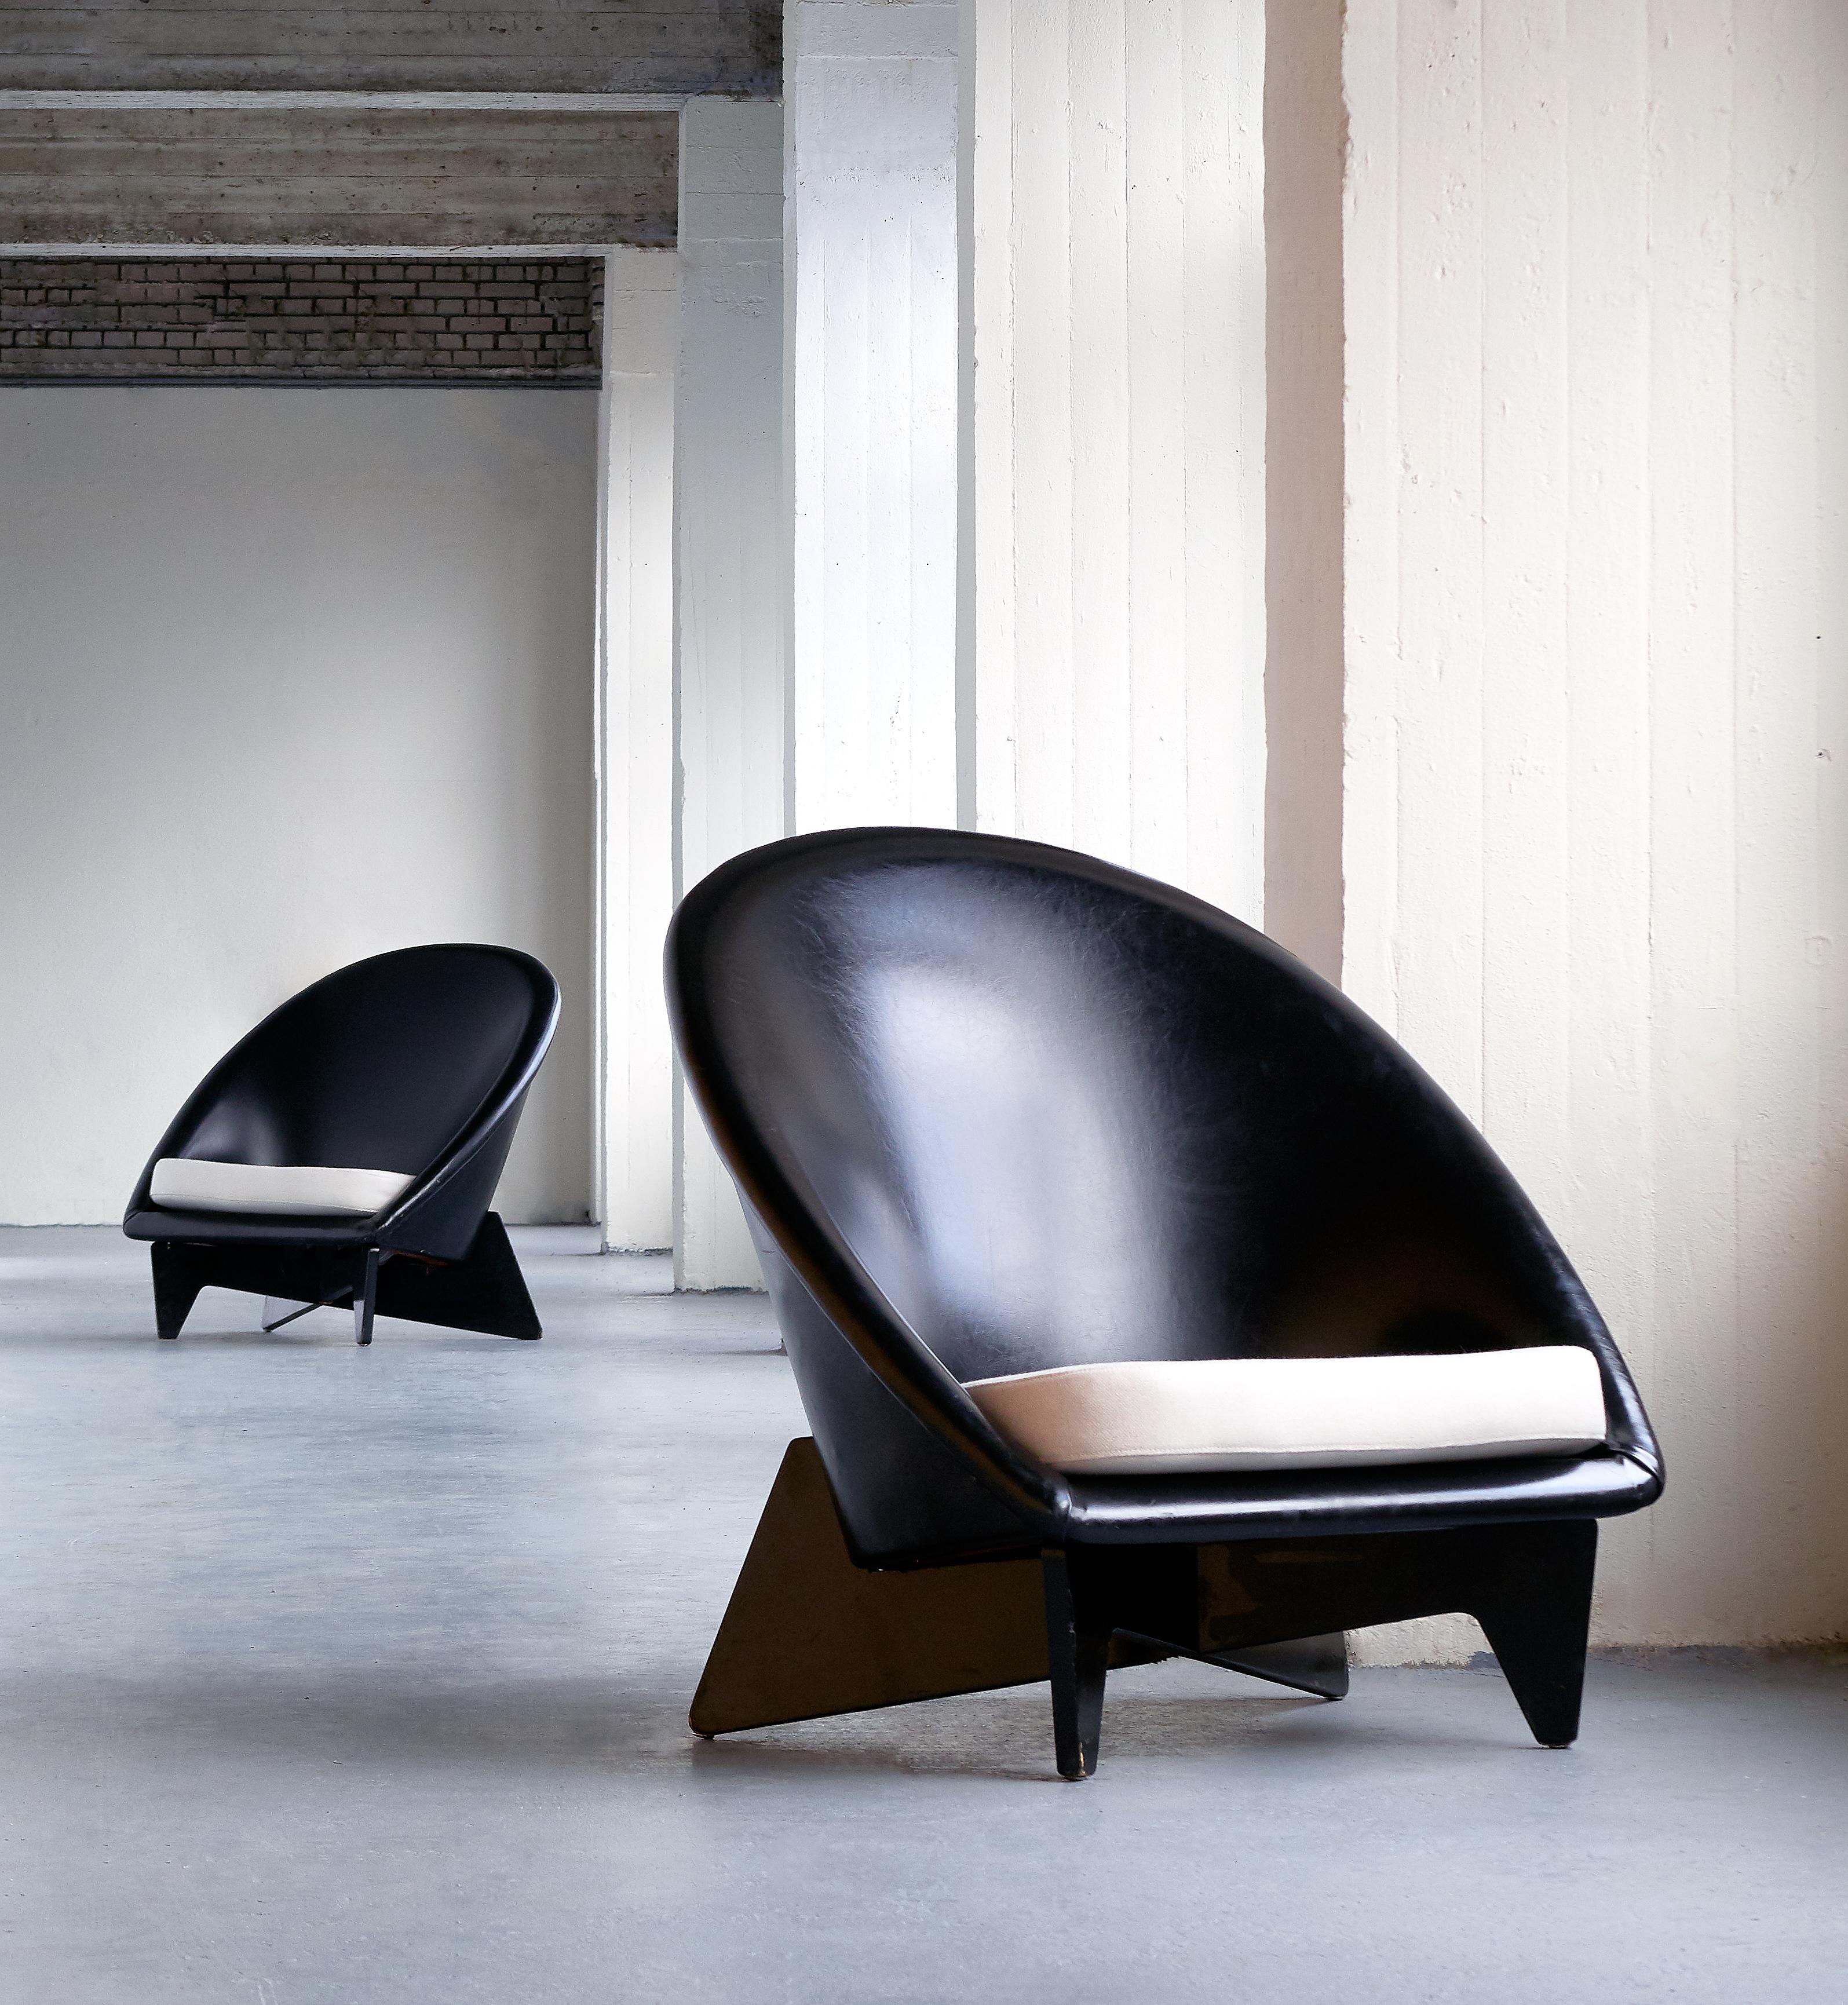 Dieses außergewöhnlich seltene Sesselpaar wurde 1952 von Antti Nurmesniemi für das Palace Hotel in Helsinki entworfen. Die Stühle waren eine Auftragsarbeit für die Einrichtung der Lobby und anderer öffentlicher Räume des modernistischen Hotels.
Die